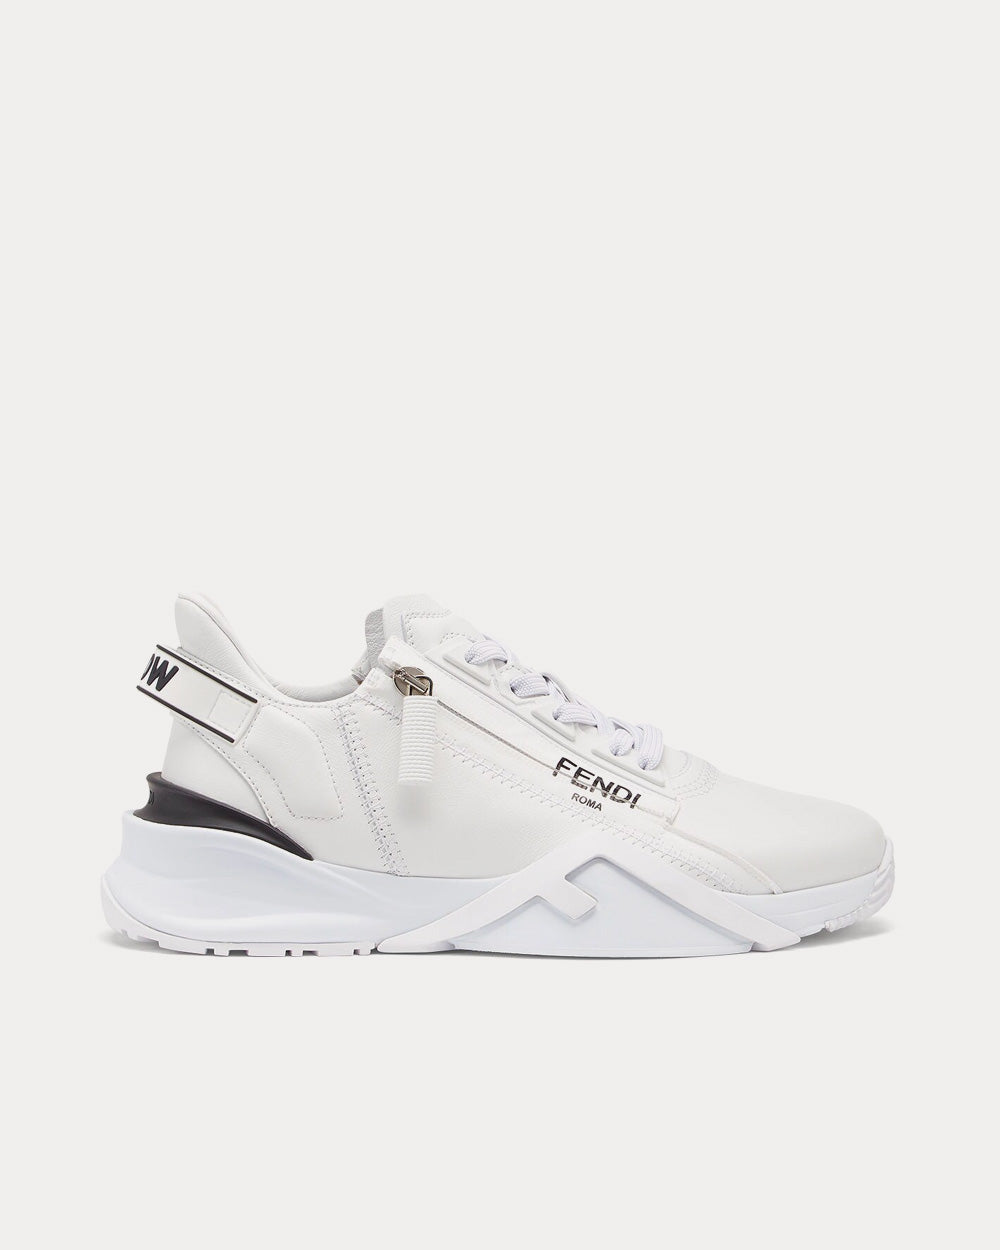 Fendi Flow Leather White Low Top Sneakers - Sneak in Peace